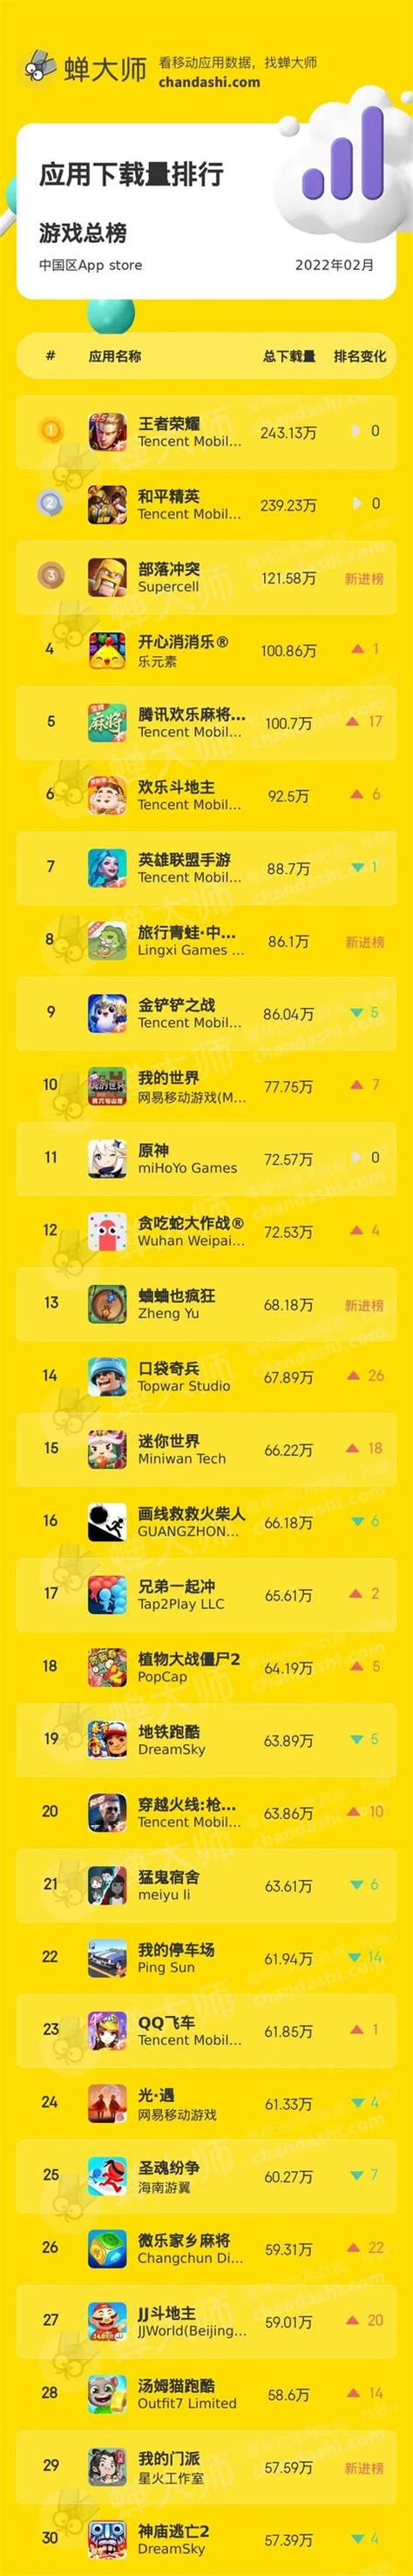 首份小程序游戏榜单出炉：TOP10中腾讯系产品占一半 | 游戏大观 | GameLook.com.cn